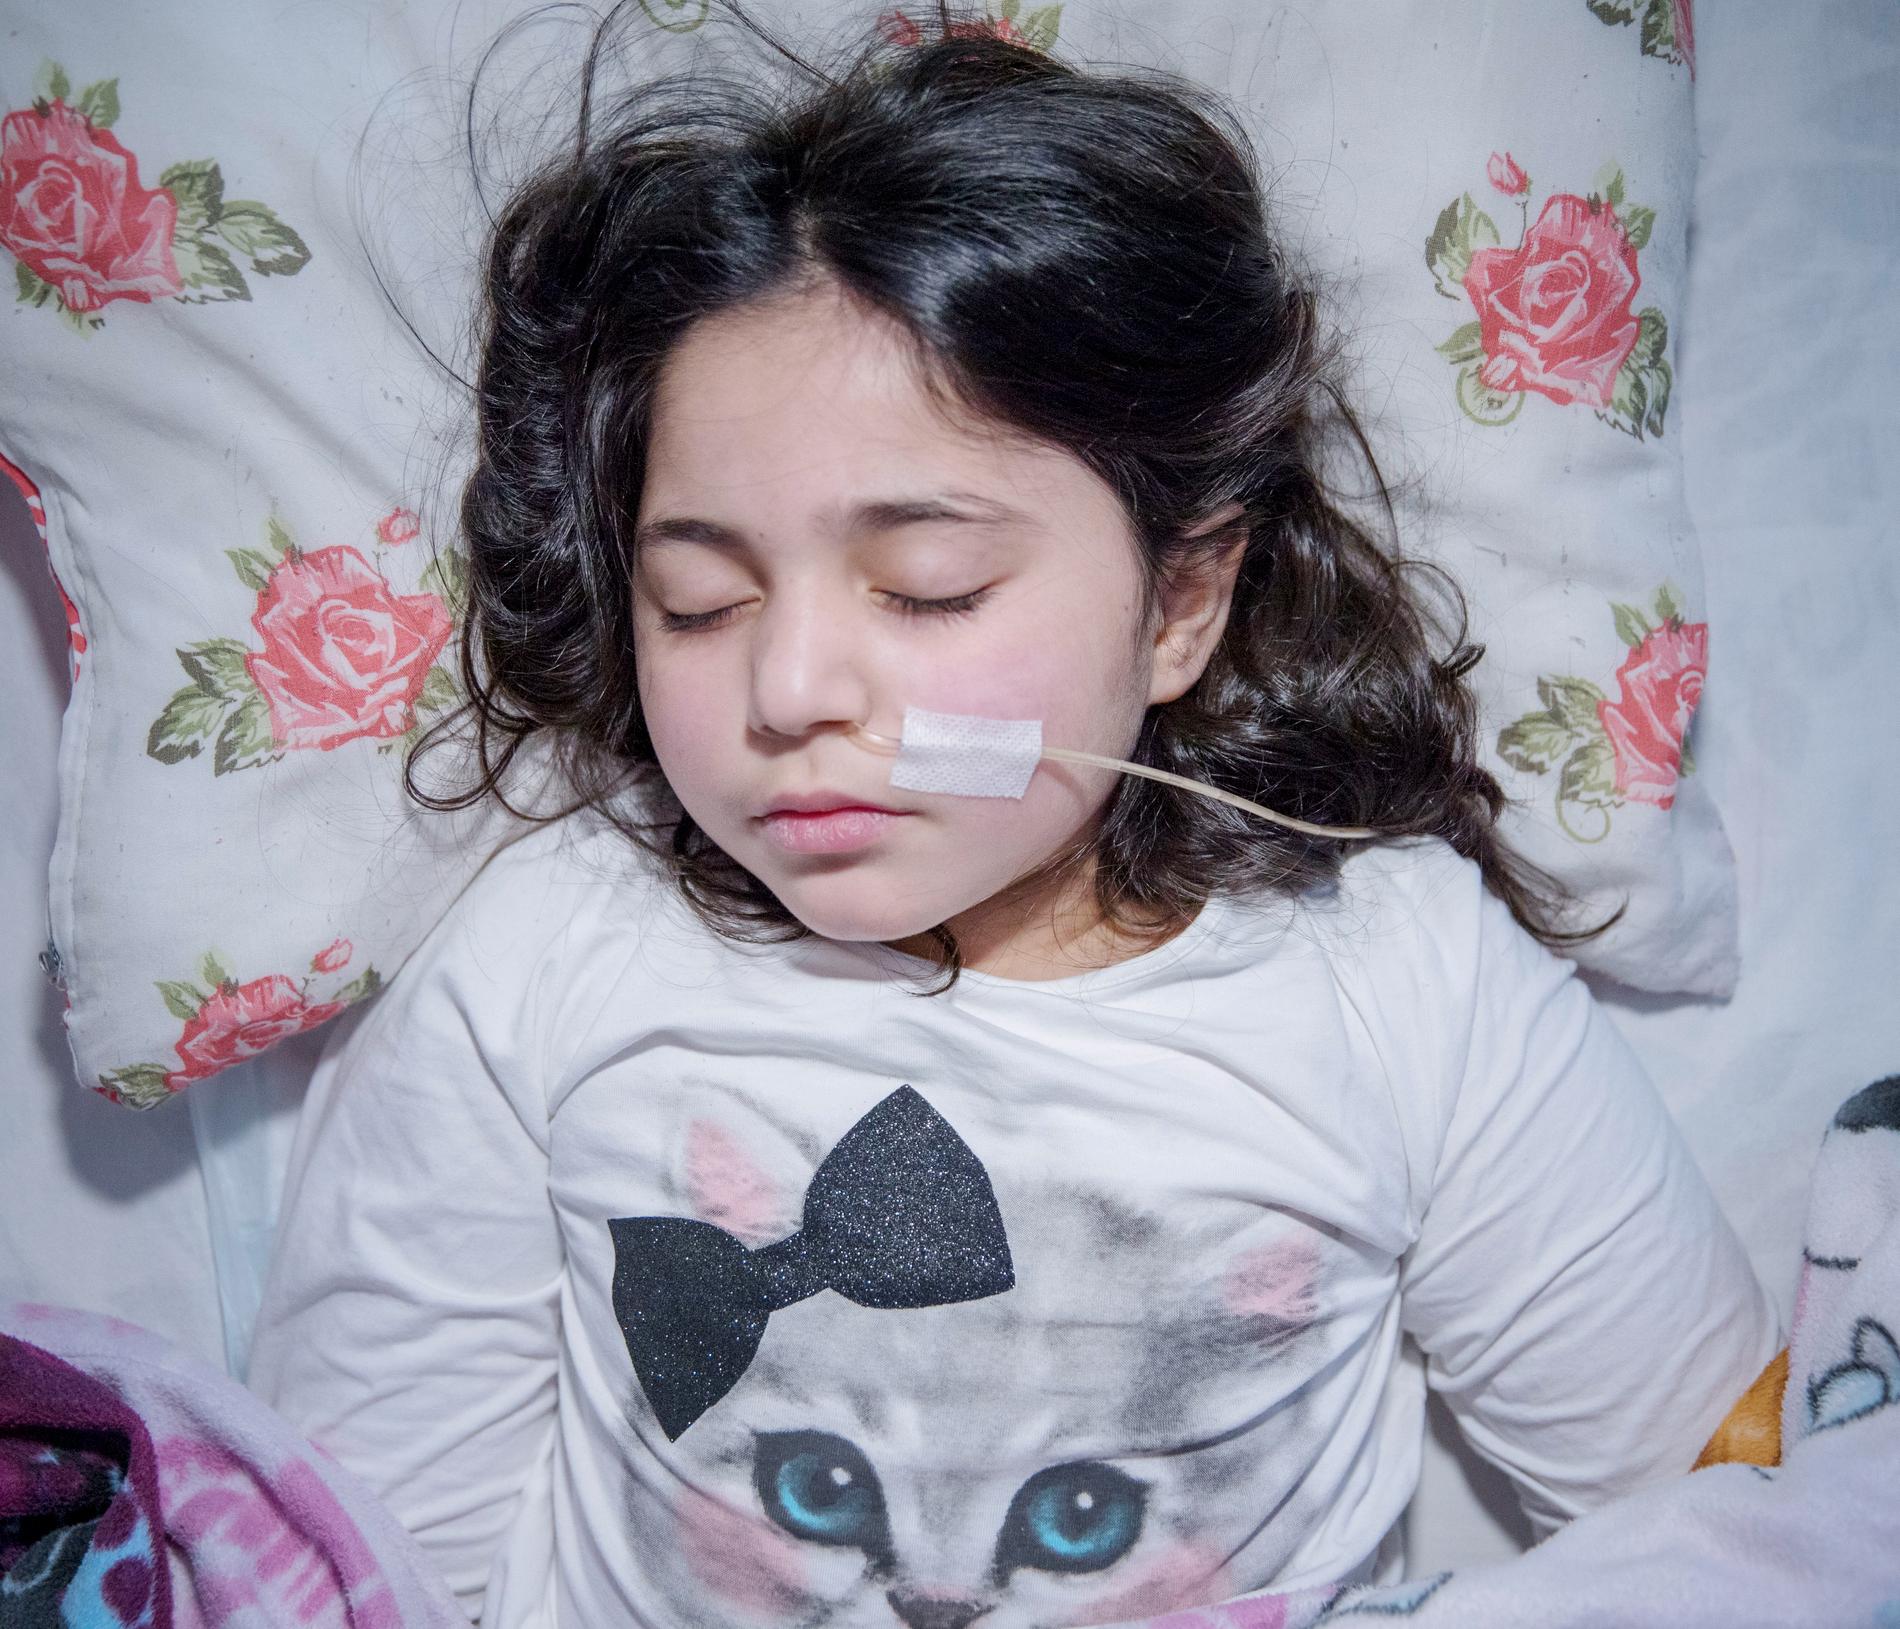 I Sverige har flera hundra immigrantbarn vars familjer riskerar utvisning drabbats av uppgivenhetssyndrom, ett förbryllande tillstånd då barnet drar sig undan från omvärlden, inte ens reagerar på smärta och måste sondmatas, i vissa fall flera år. "Hon lider inte nu" , säger läkaren Elisabeth Hultcrantz om tioåriga Leyla Ahmed, som flytt från Syrien. 